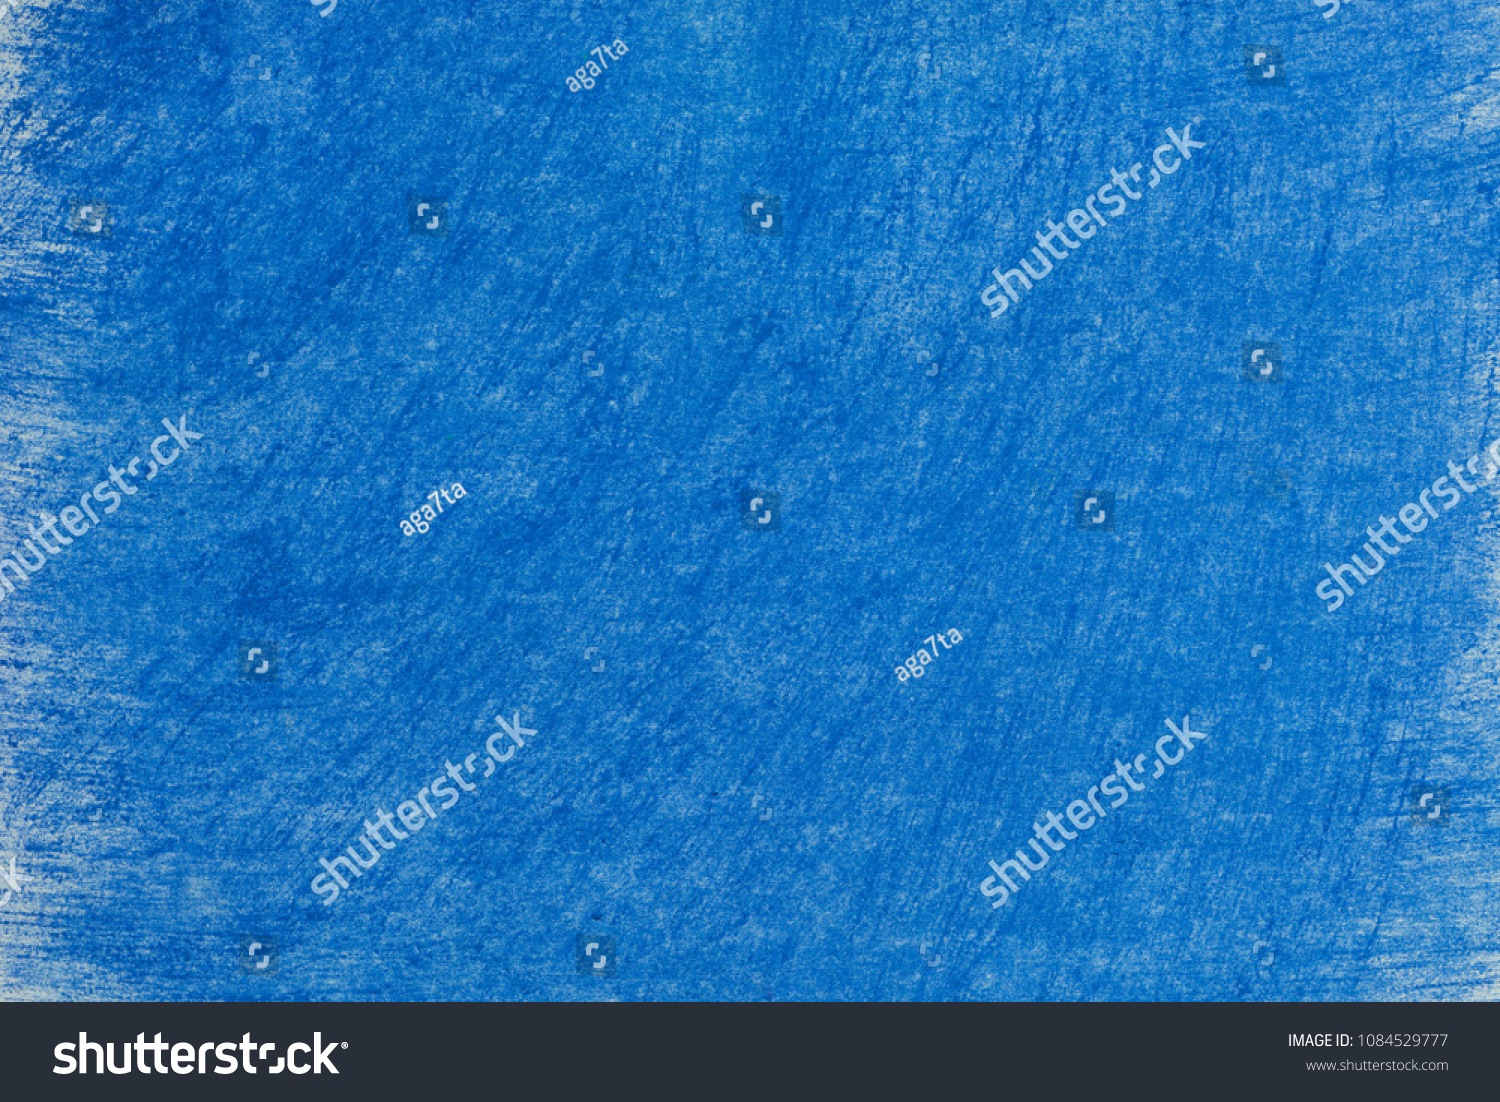 art blue color pastel crayon background texture #1084529777